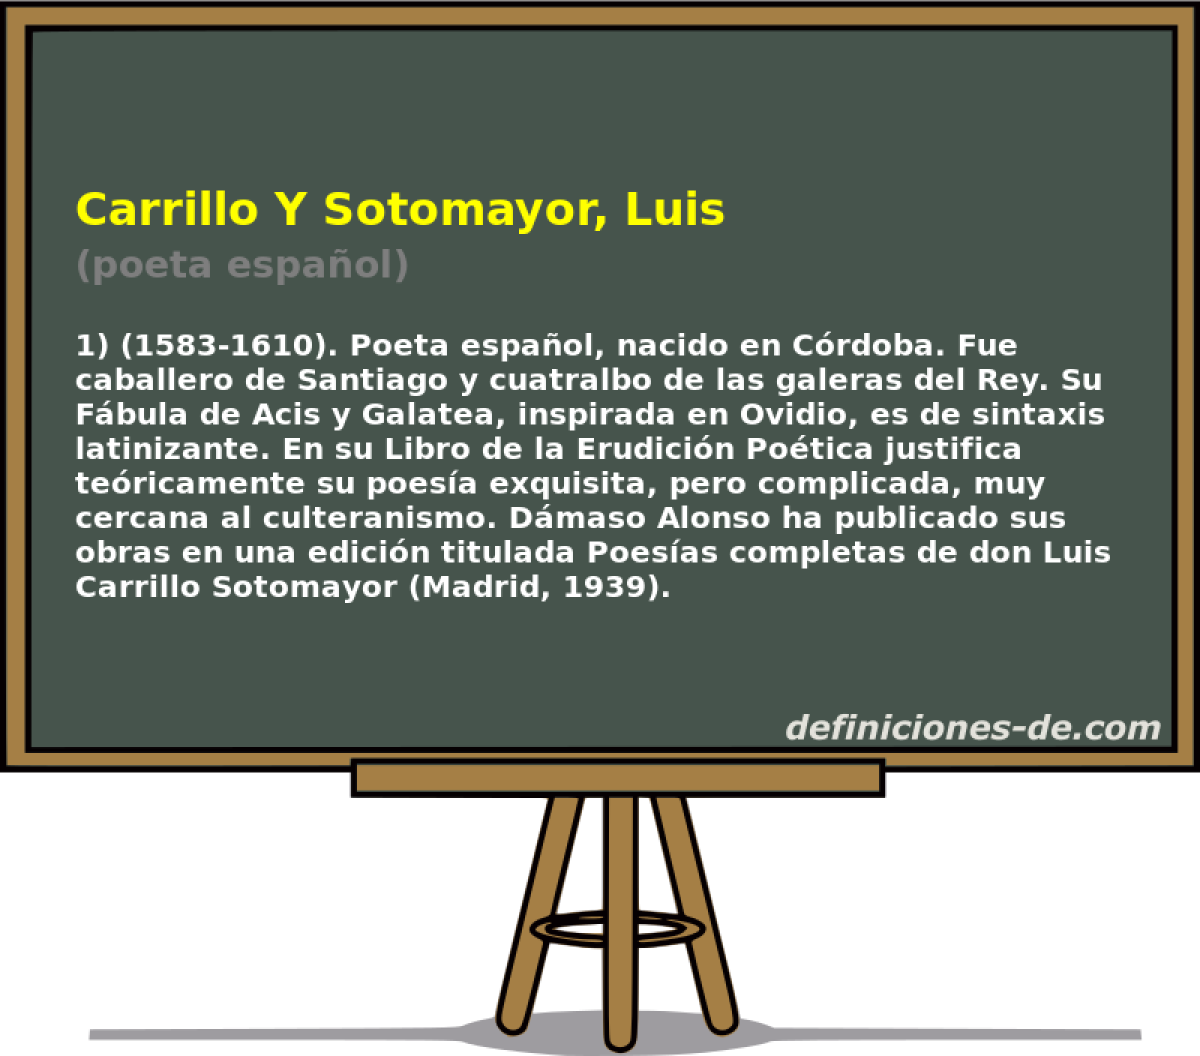 Carrillo Y Sotomayor, Luis (poeta espaol)